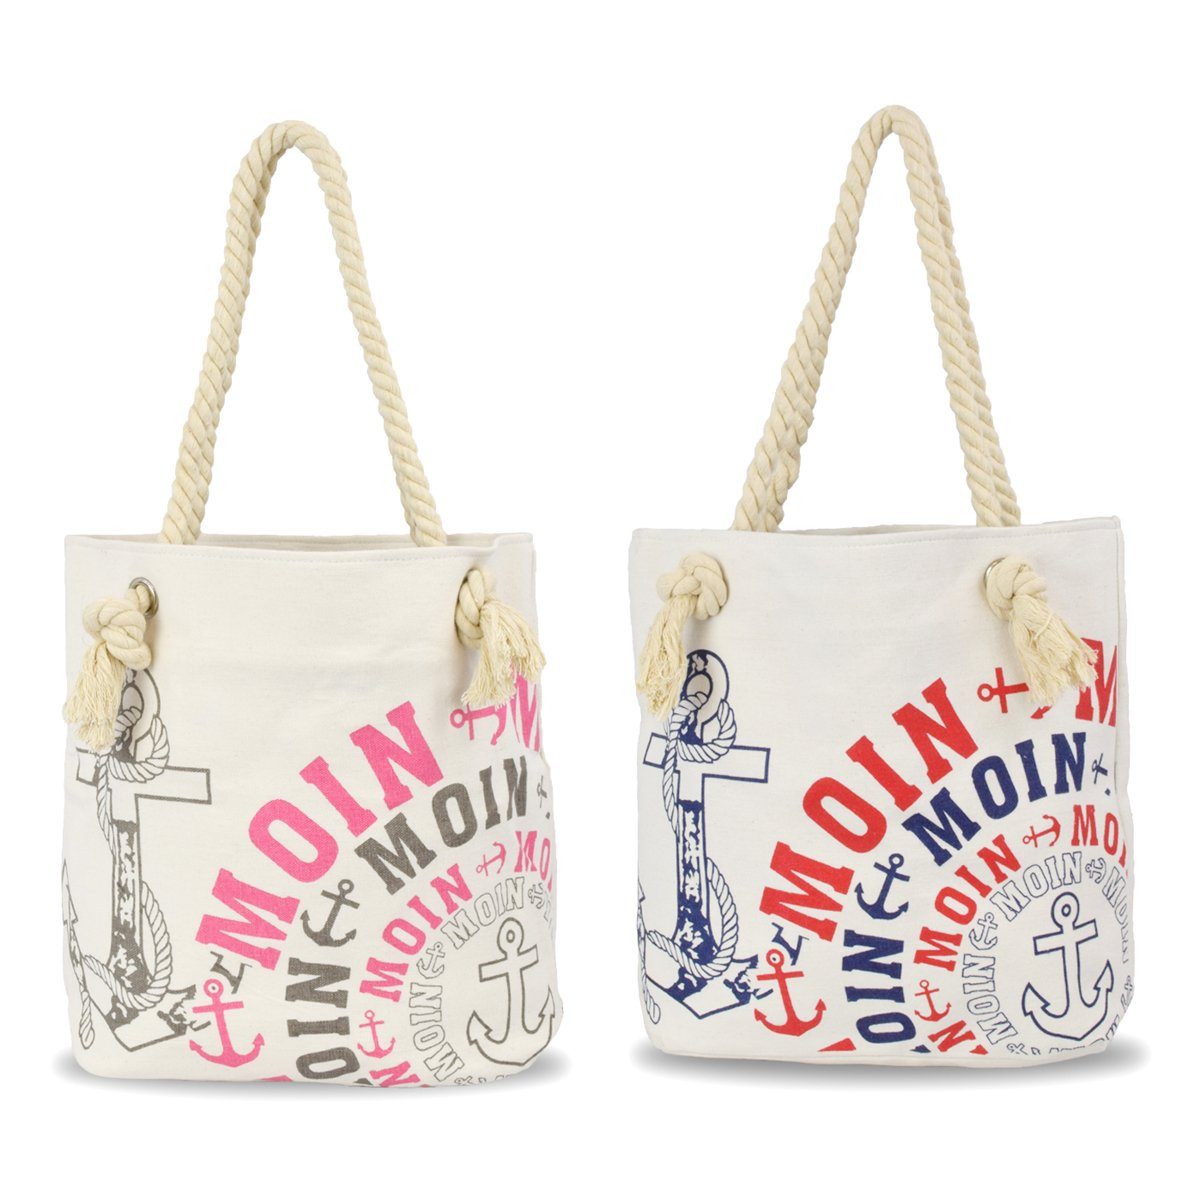 Einkaufstasche kleine Umhängetasche City Sonia "MOIN" Bag, grau-rosa Reißverschluss Tasche mit Originelli Innentasche Shopper